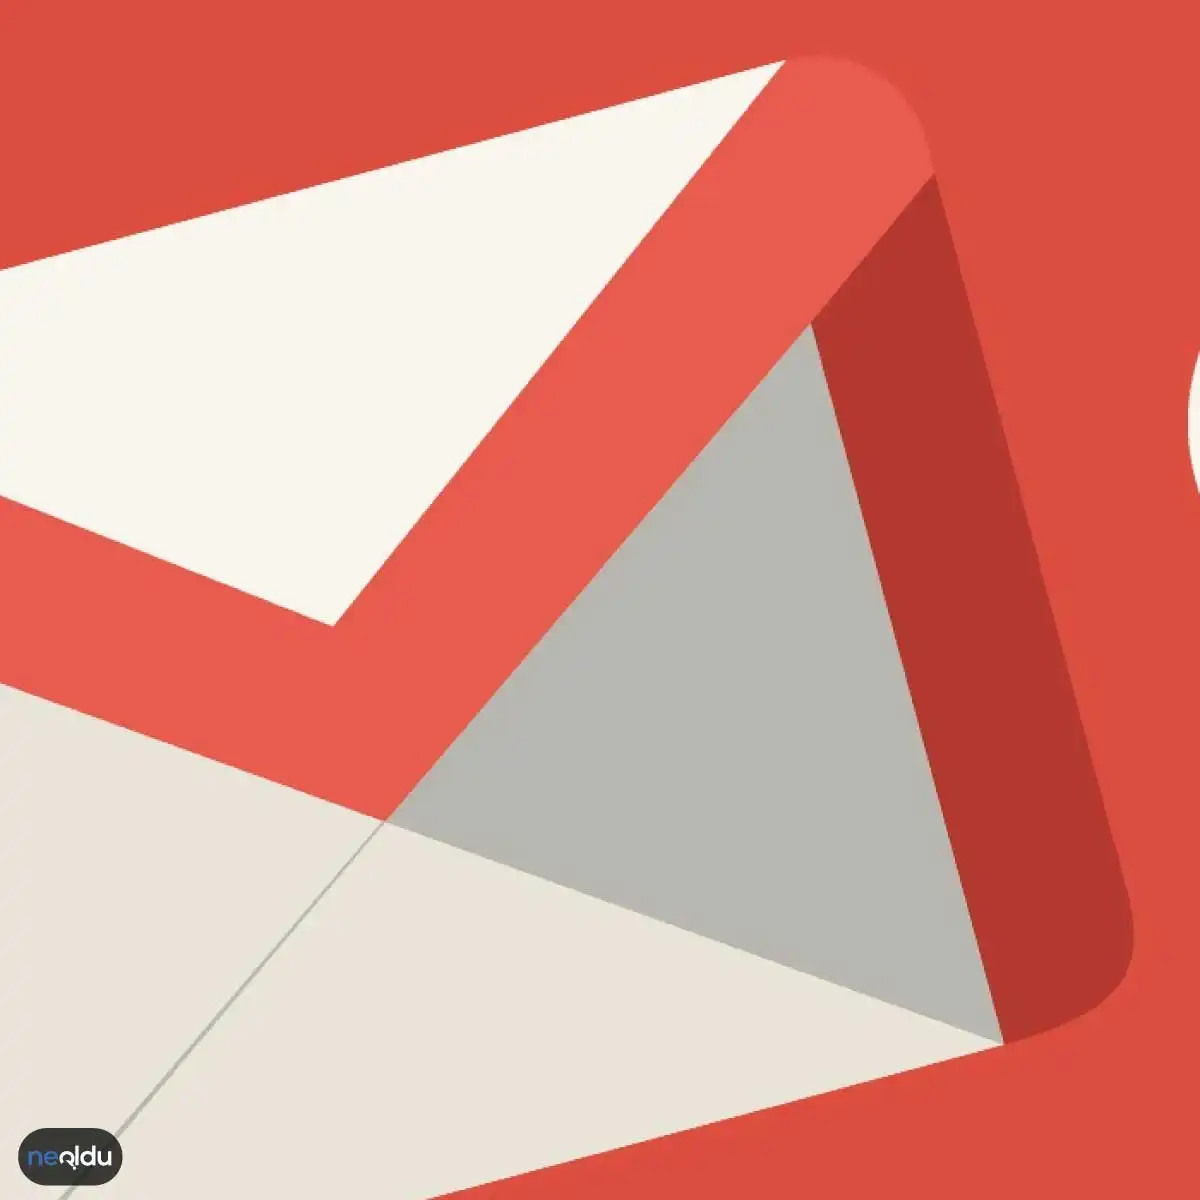 Gmail Hesabı Silme